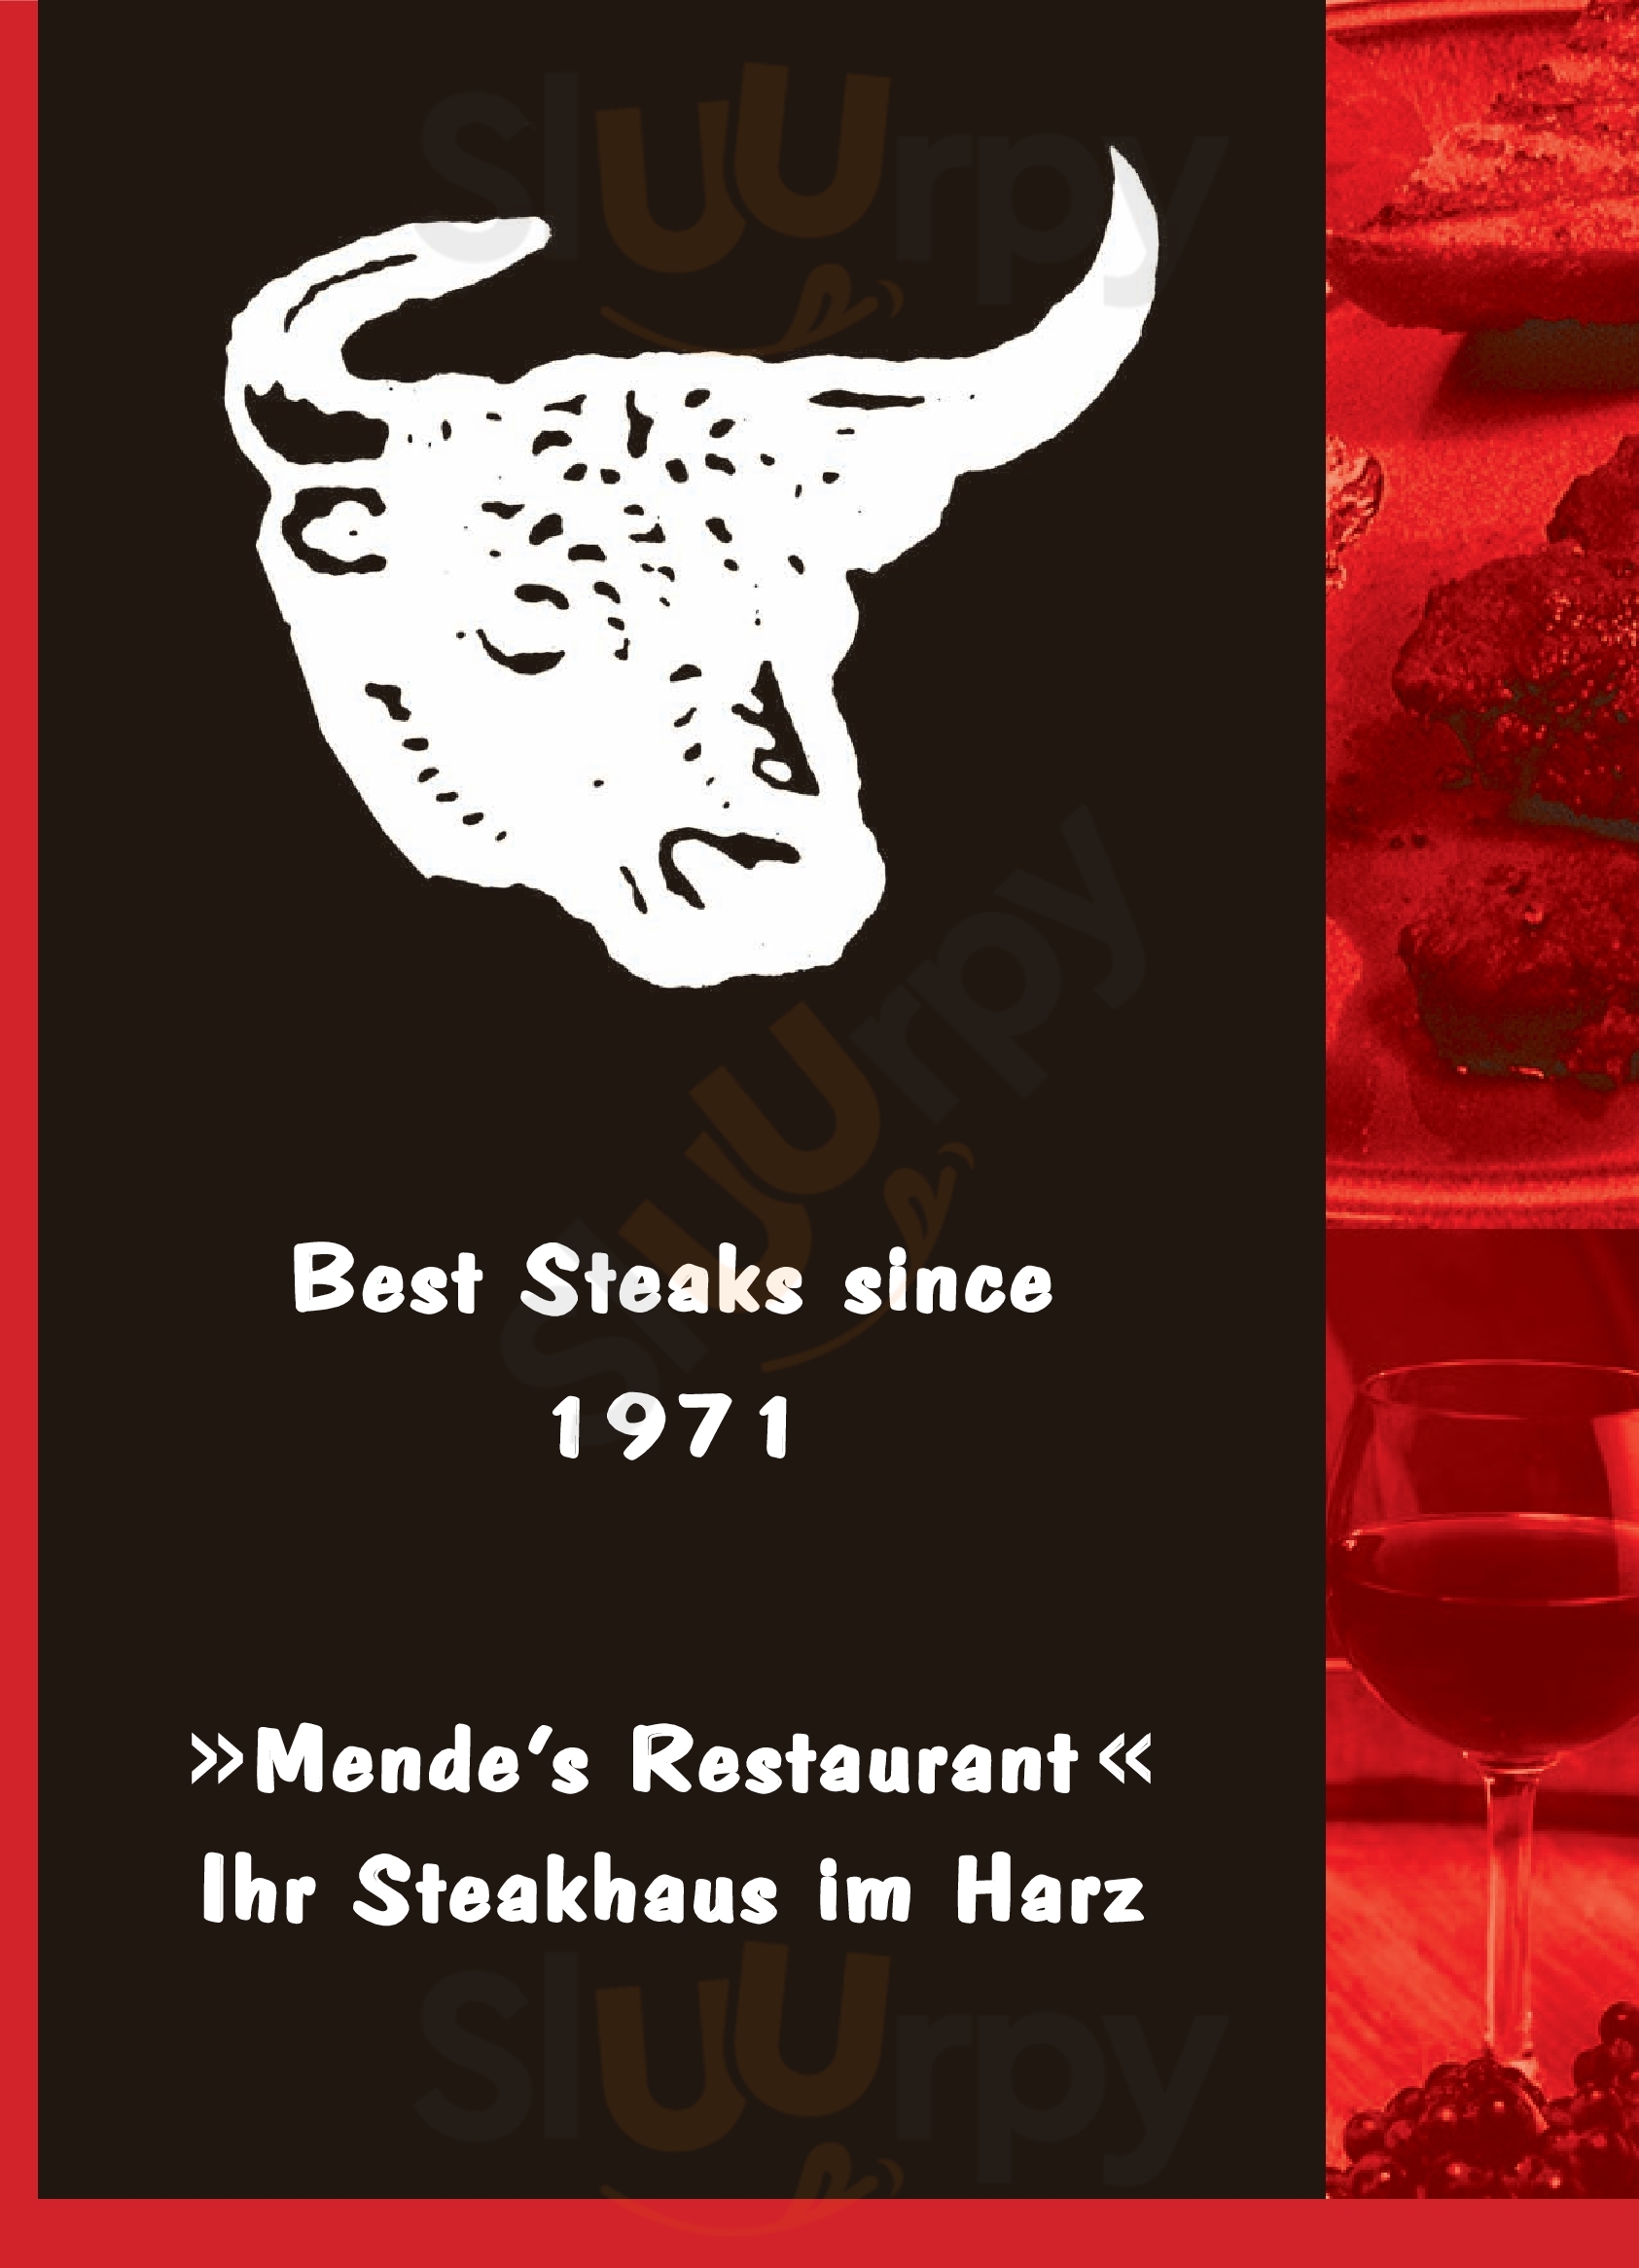 Mende's Restaurant - Ihr Steakhaus Im Harz Bad Sachsa Menu - 1